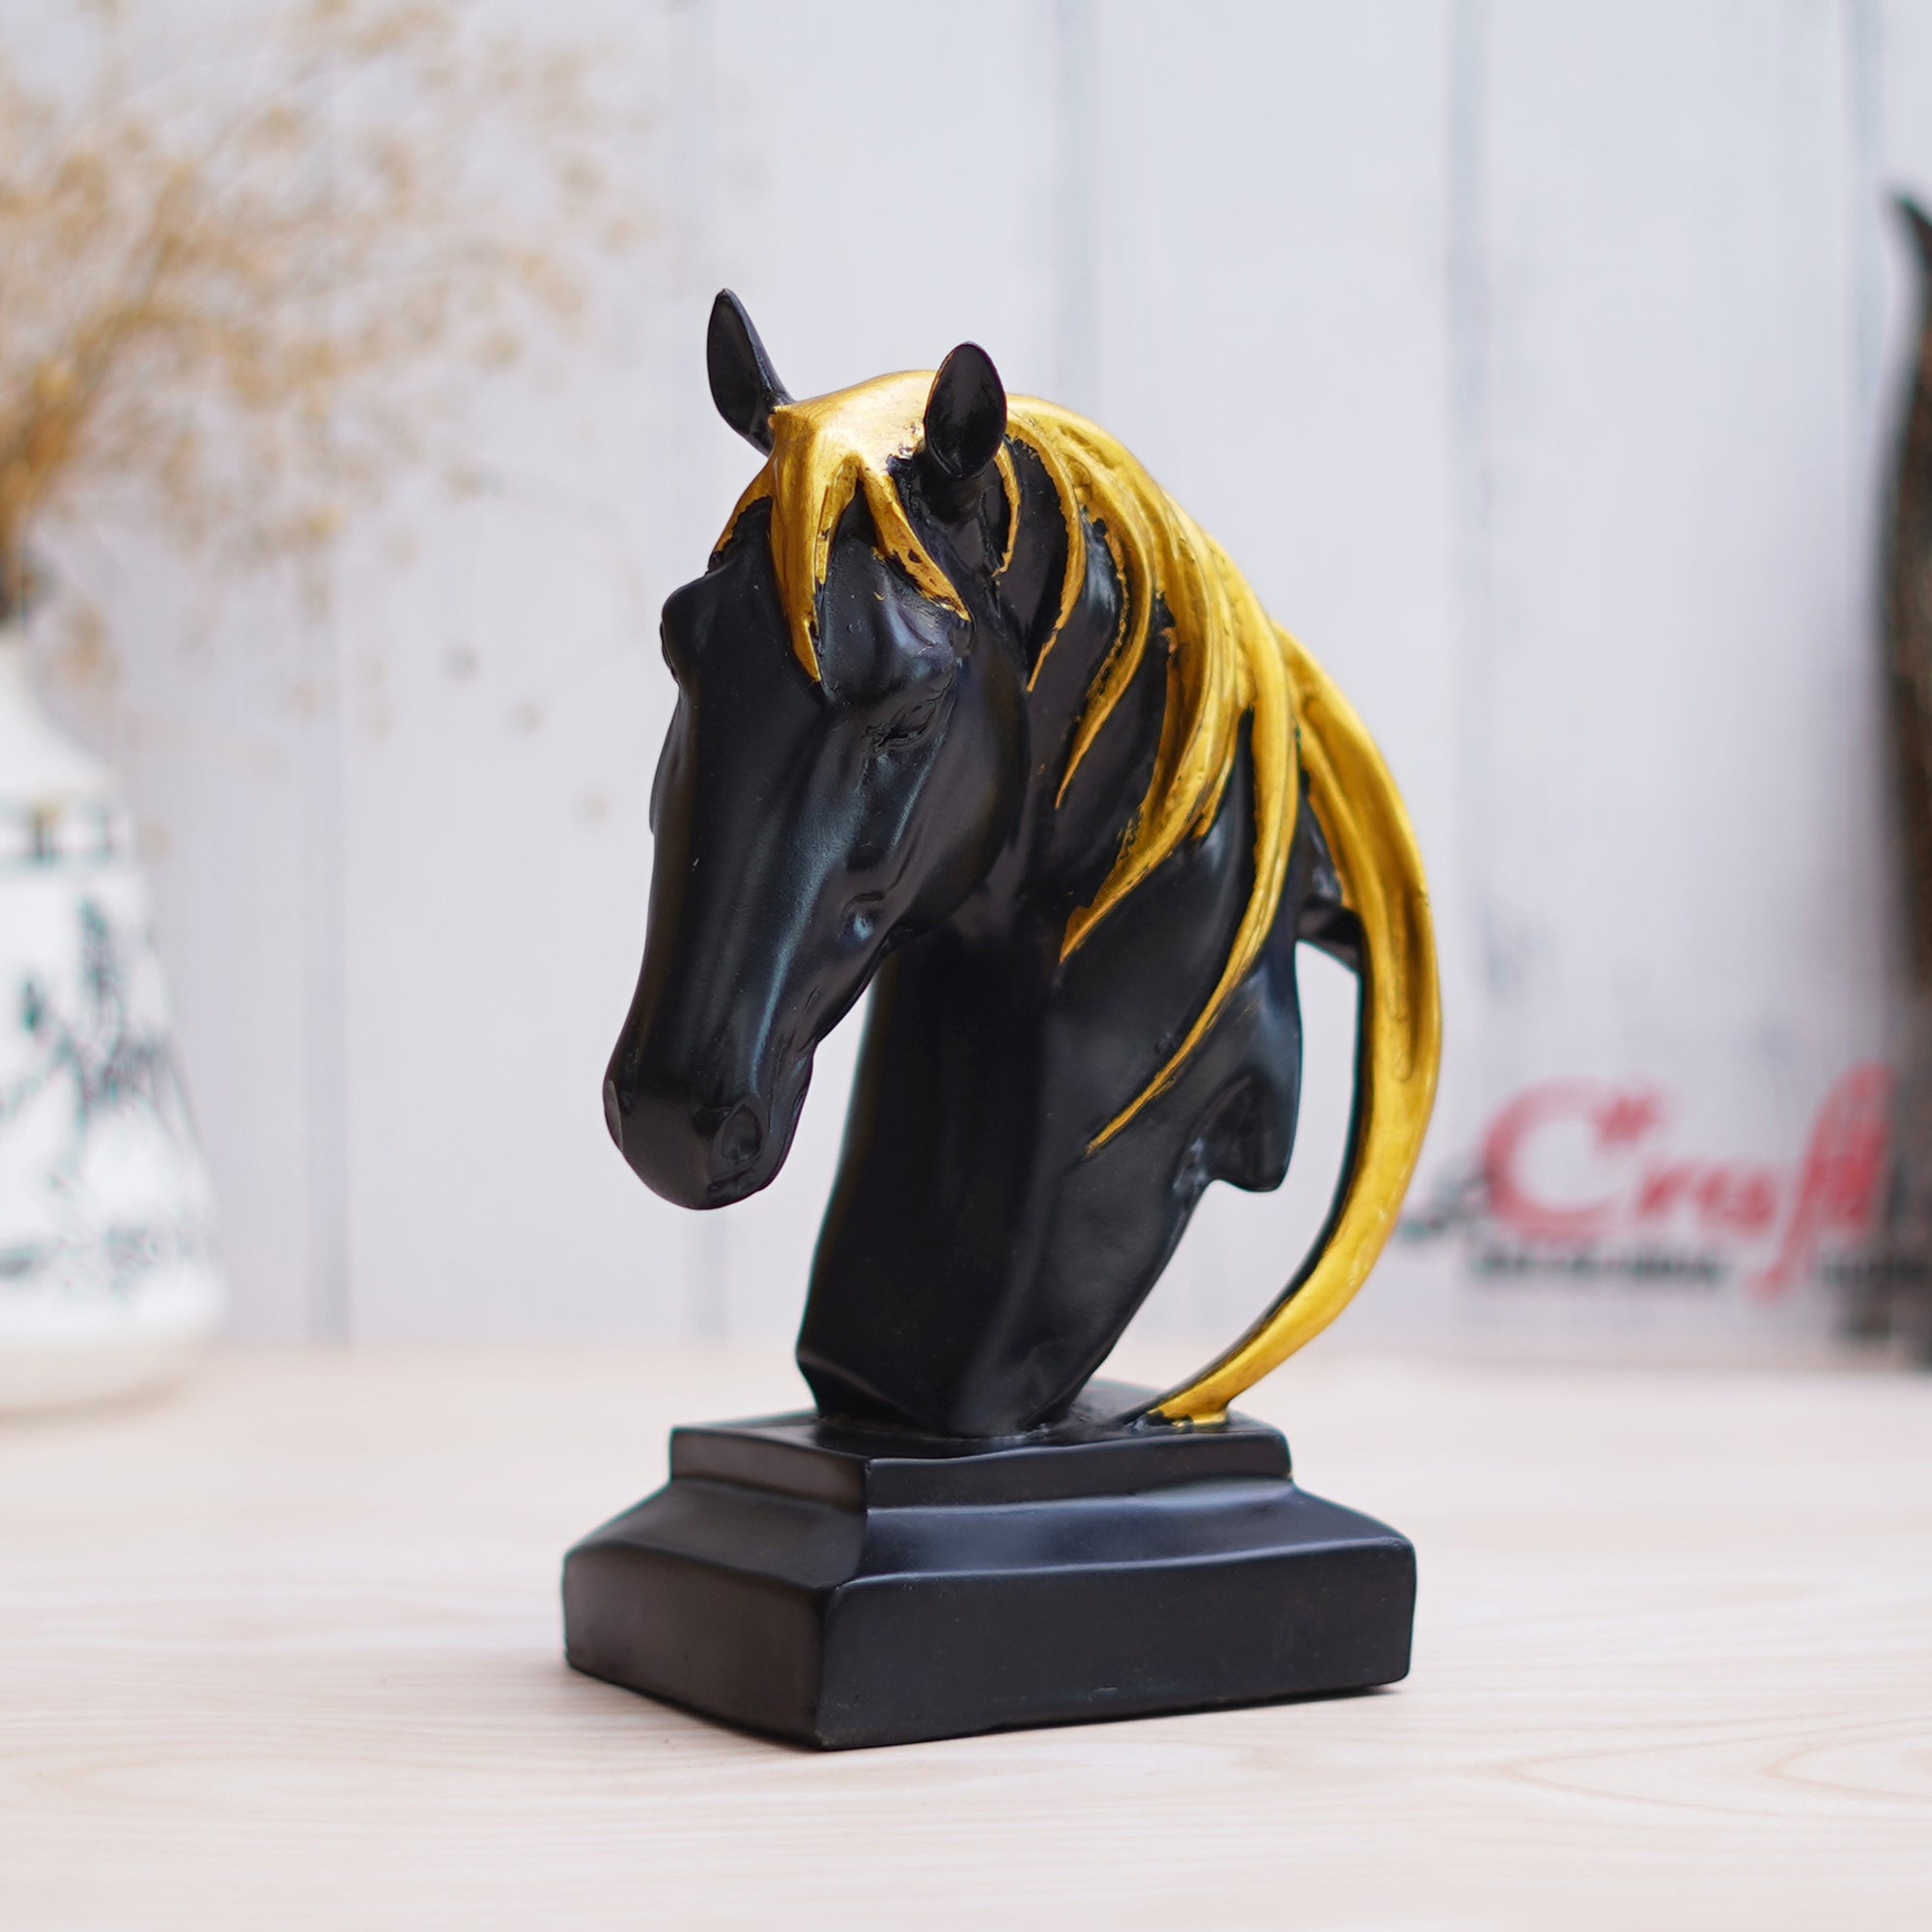 Black Horse Head Statue with Golden Hair Animal Figurine Showpiece 5